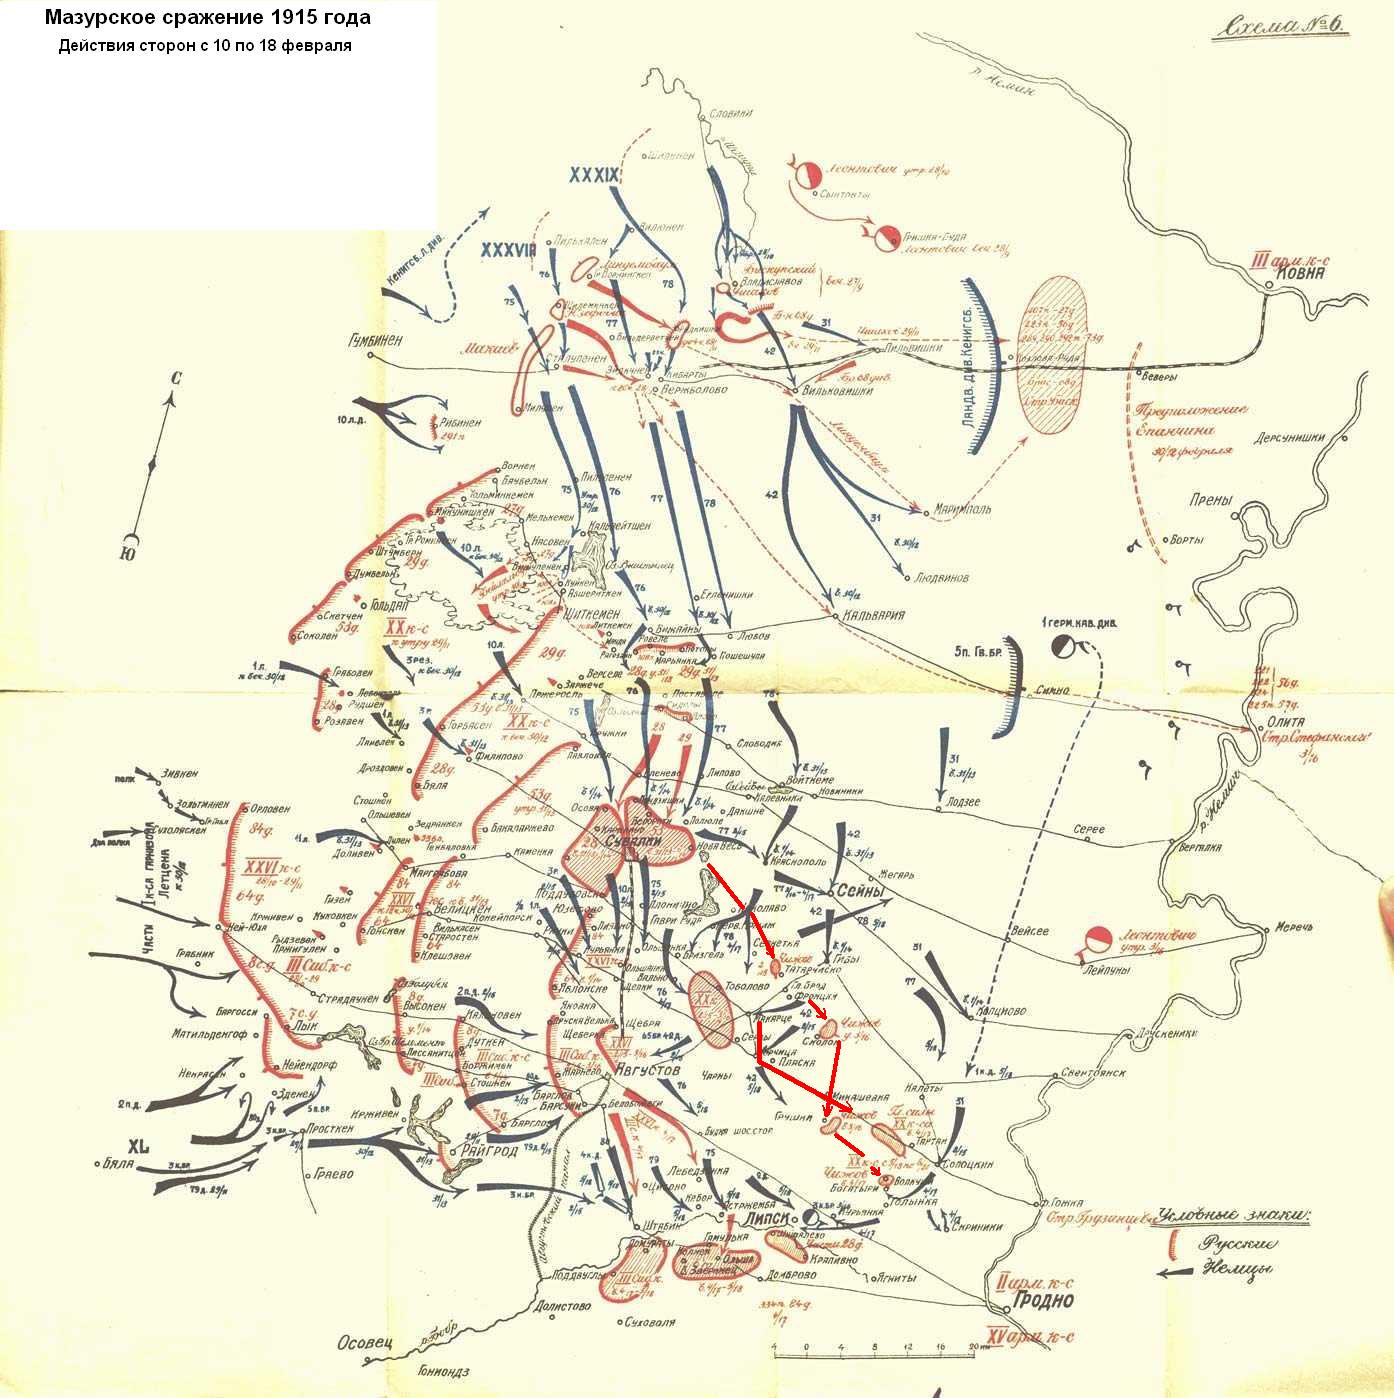 Схема действий сторон в ходе основной части Мазурского сражения 1915 года